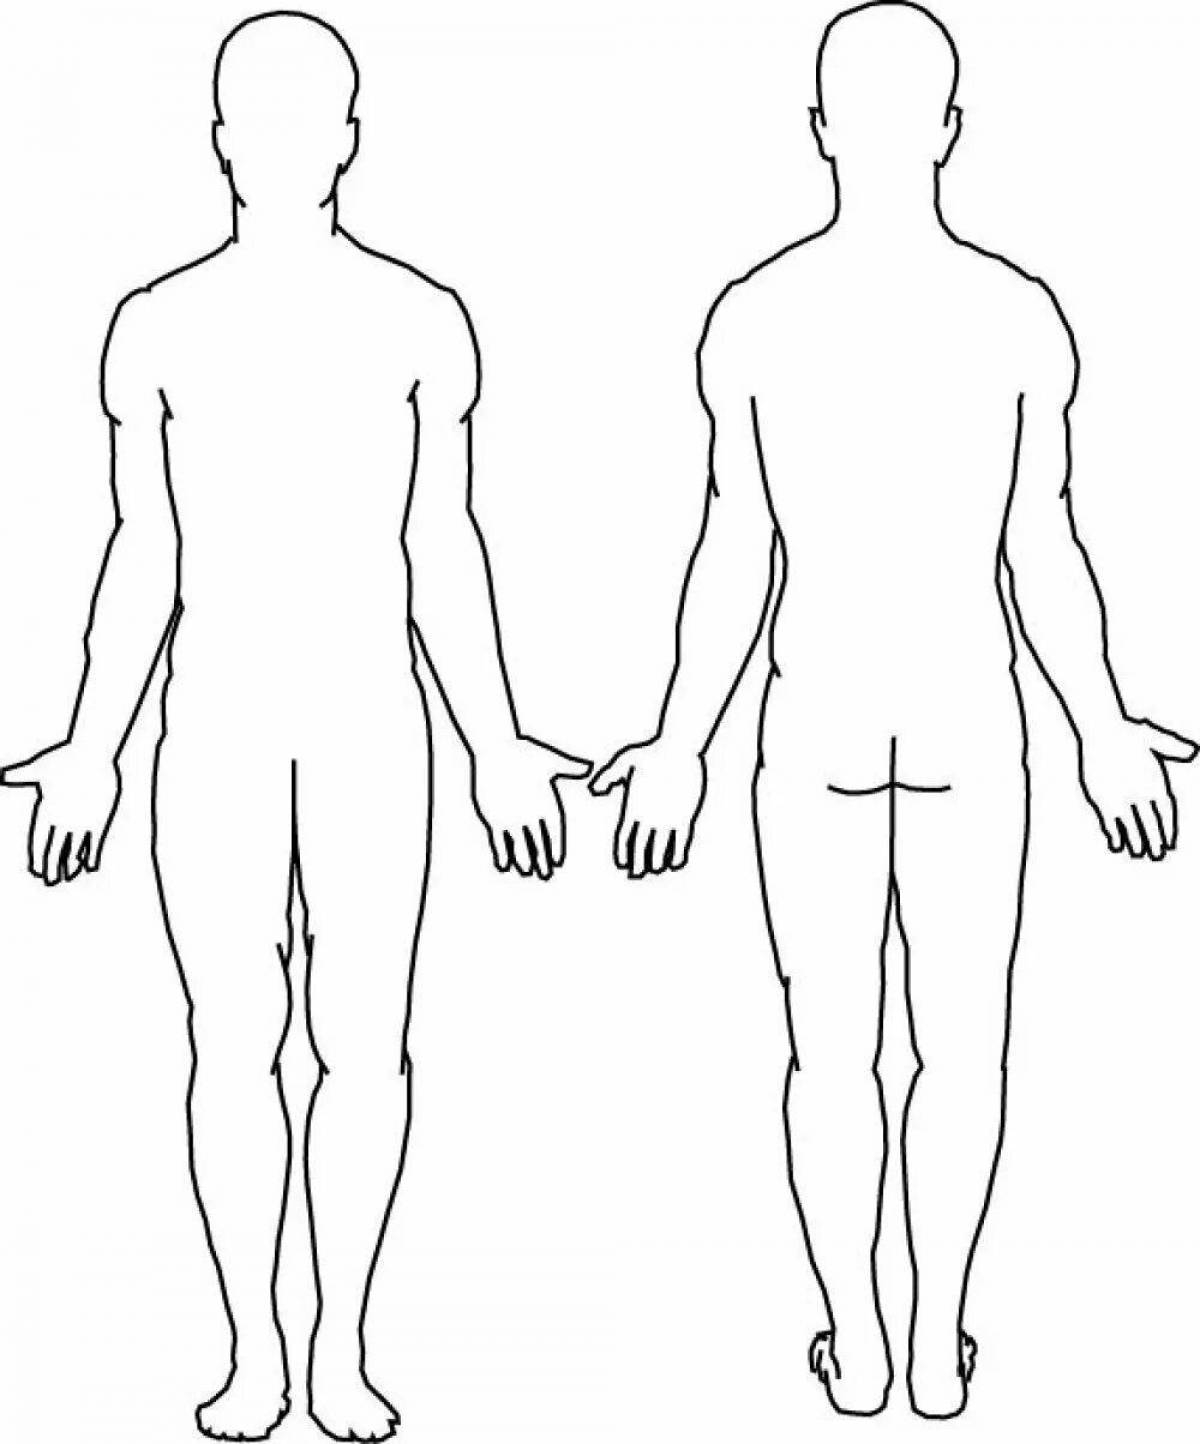 Туловище человека. Контур человека спереди и сзади. Тело человека контур спереди и сзади. Схема тела человека спереди и сзади. Контур человека сзади в полный рост.